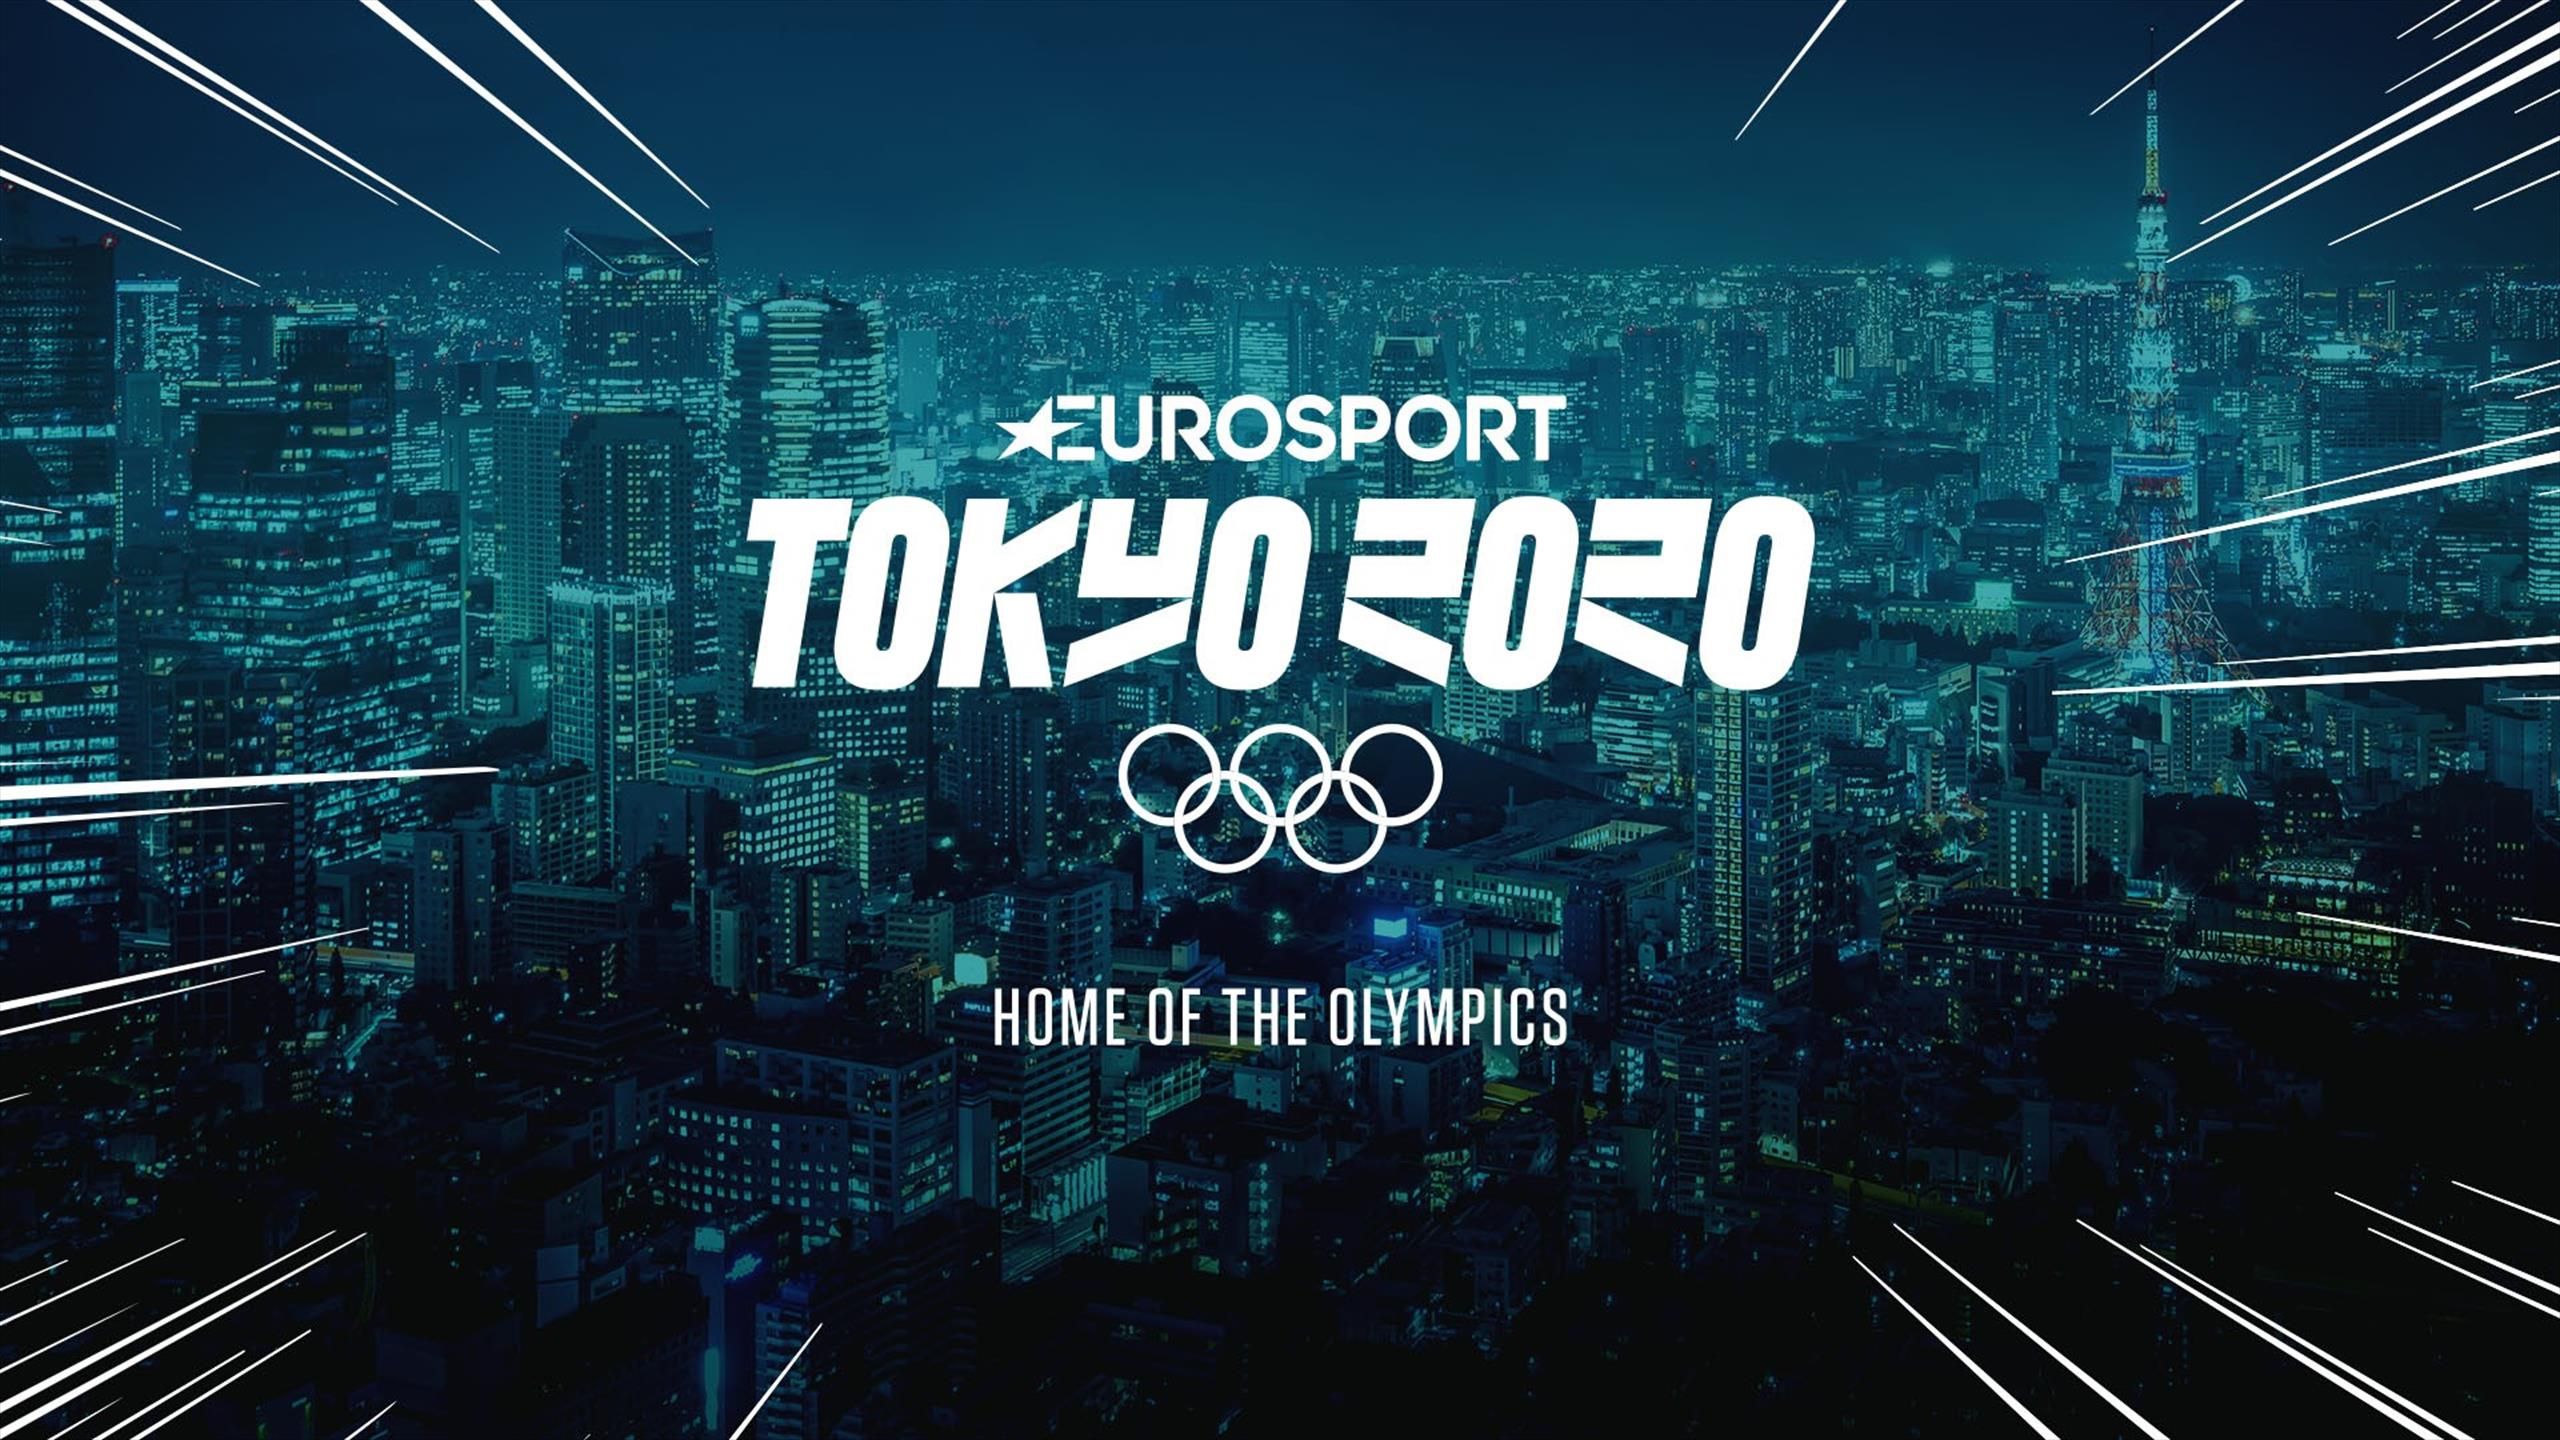 2020东京奥林匹克运动会neotokyo专用英文字体logo下载-topimage